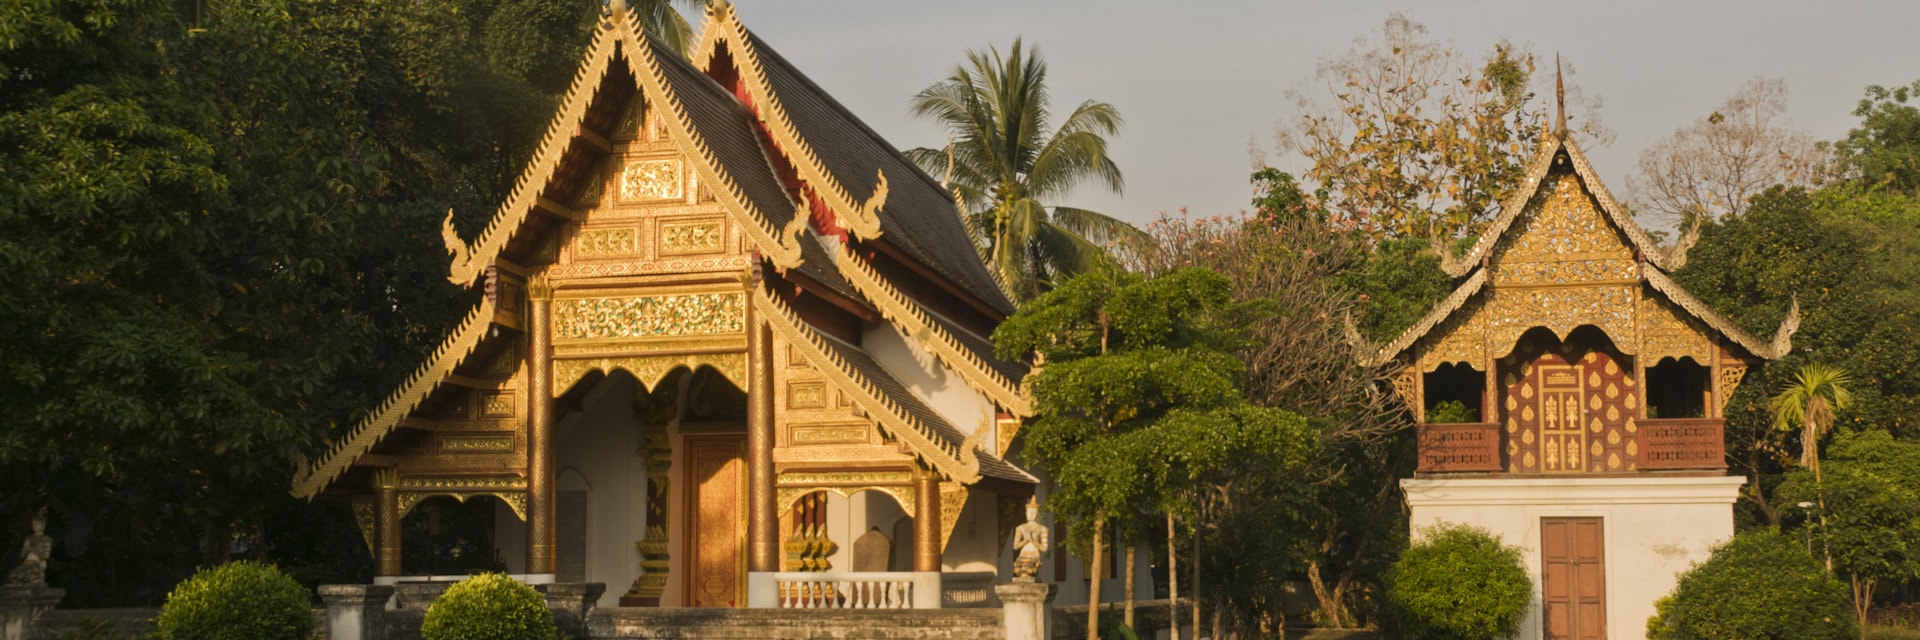 Wat Chiang Man, ubosot and library.